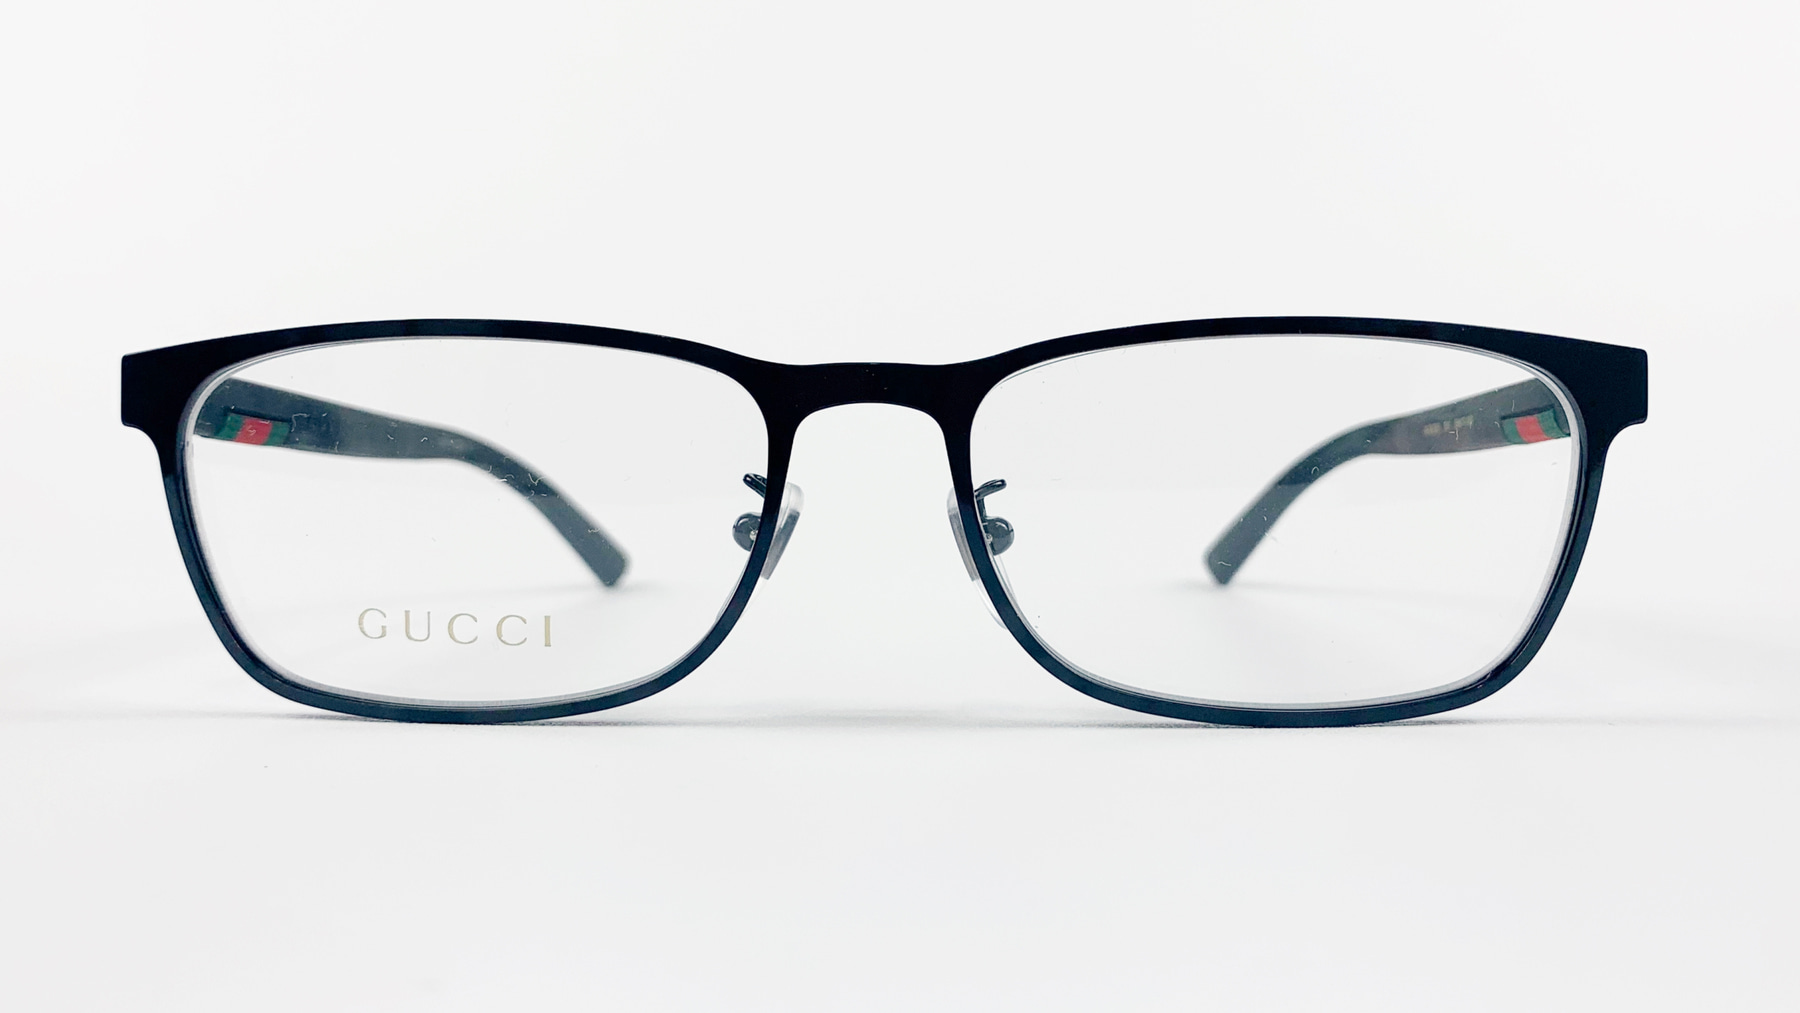 GUCCI GG0425O, Korean glasses, sunglasses, eyeglasses, glasses